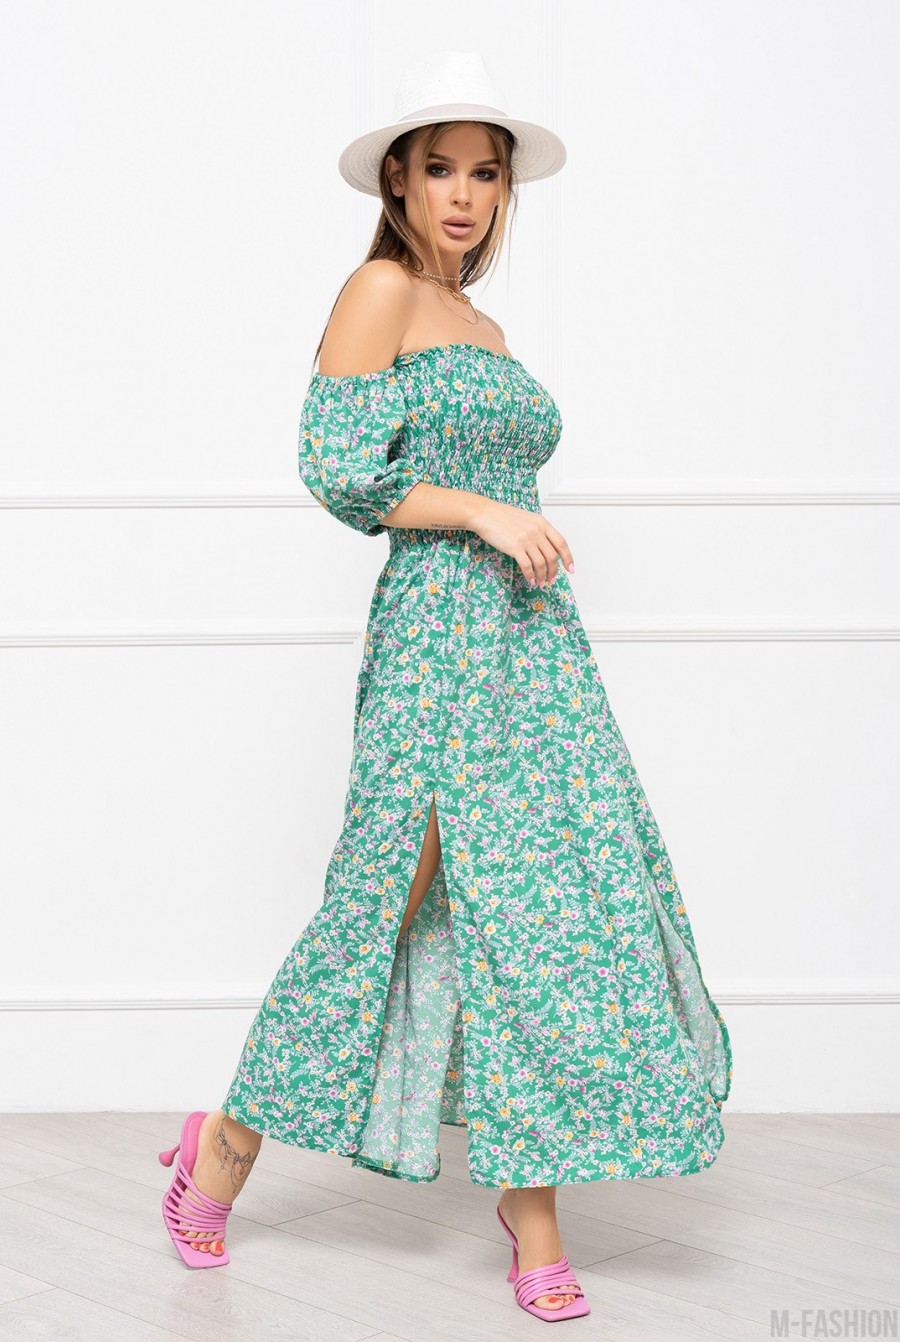 Зеленое цветочное платье с лифом-жаткой - Фото 2